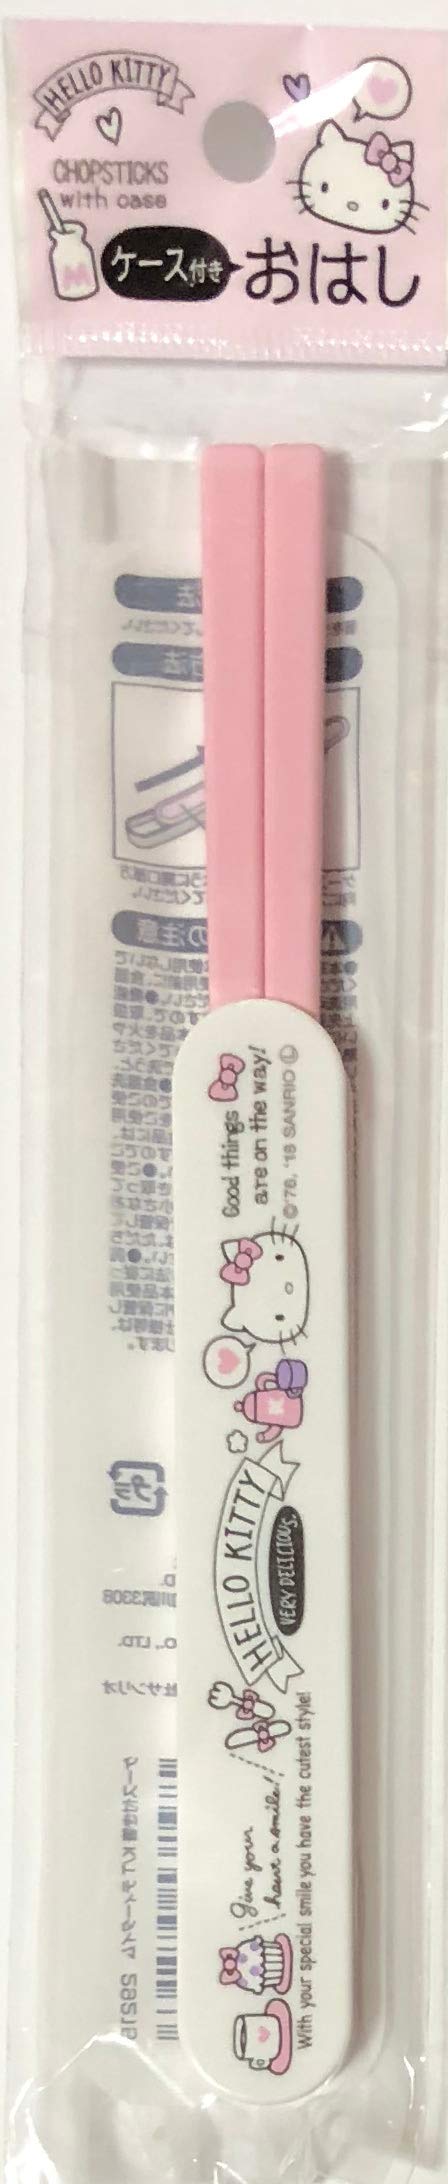  [AUSTRALIA] - Sanrio Hello Kitty Plasticks Chopsticks 18 cm with Sliding Case Kitchen (Tea Time)